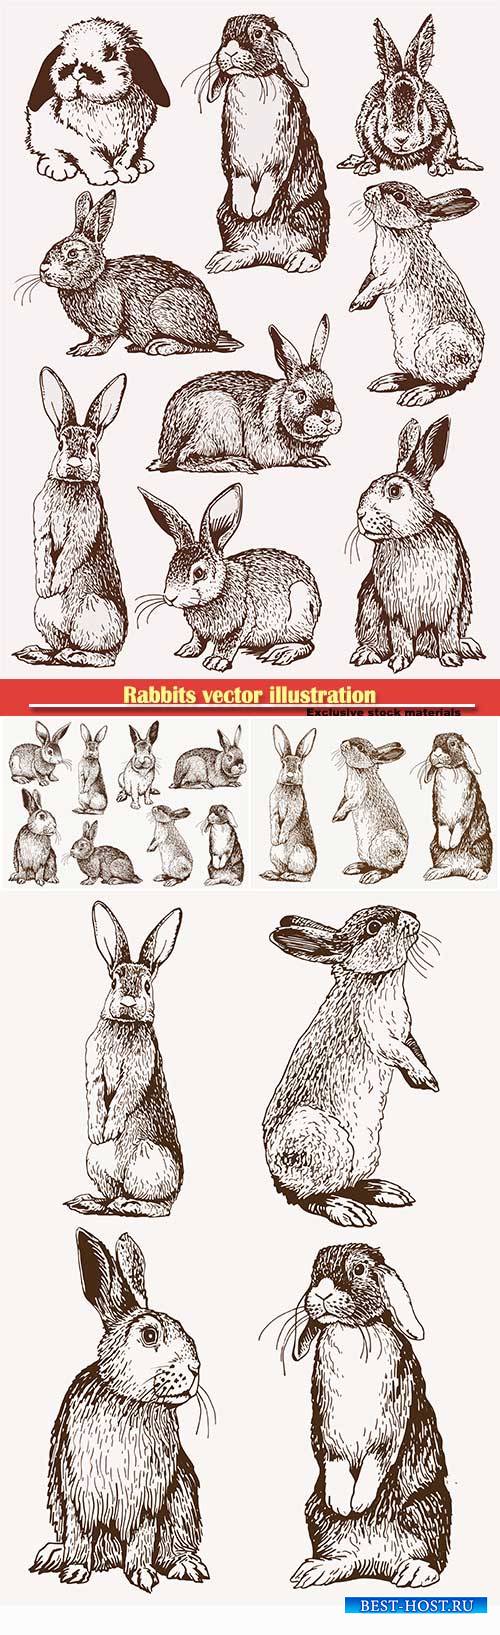 Rabbits vector illustration